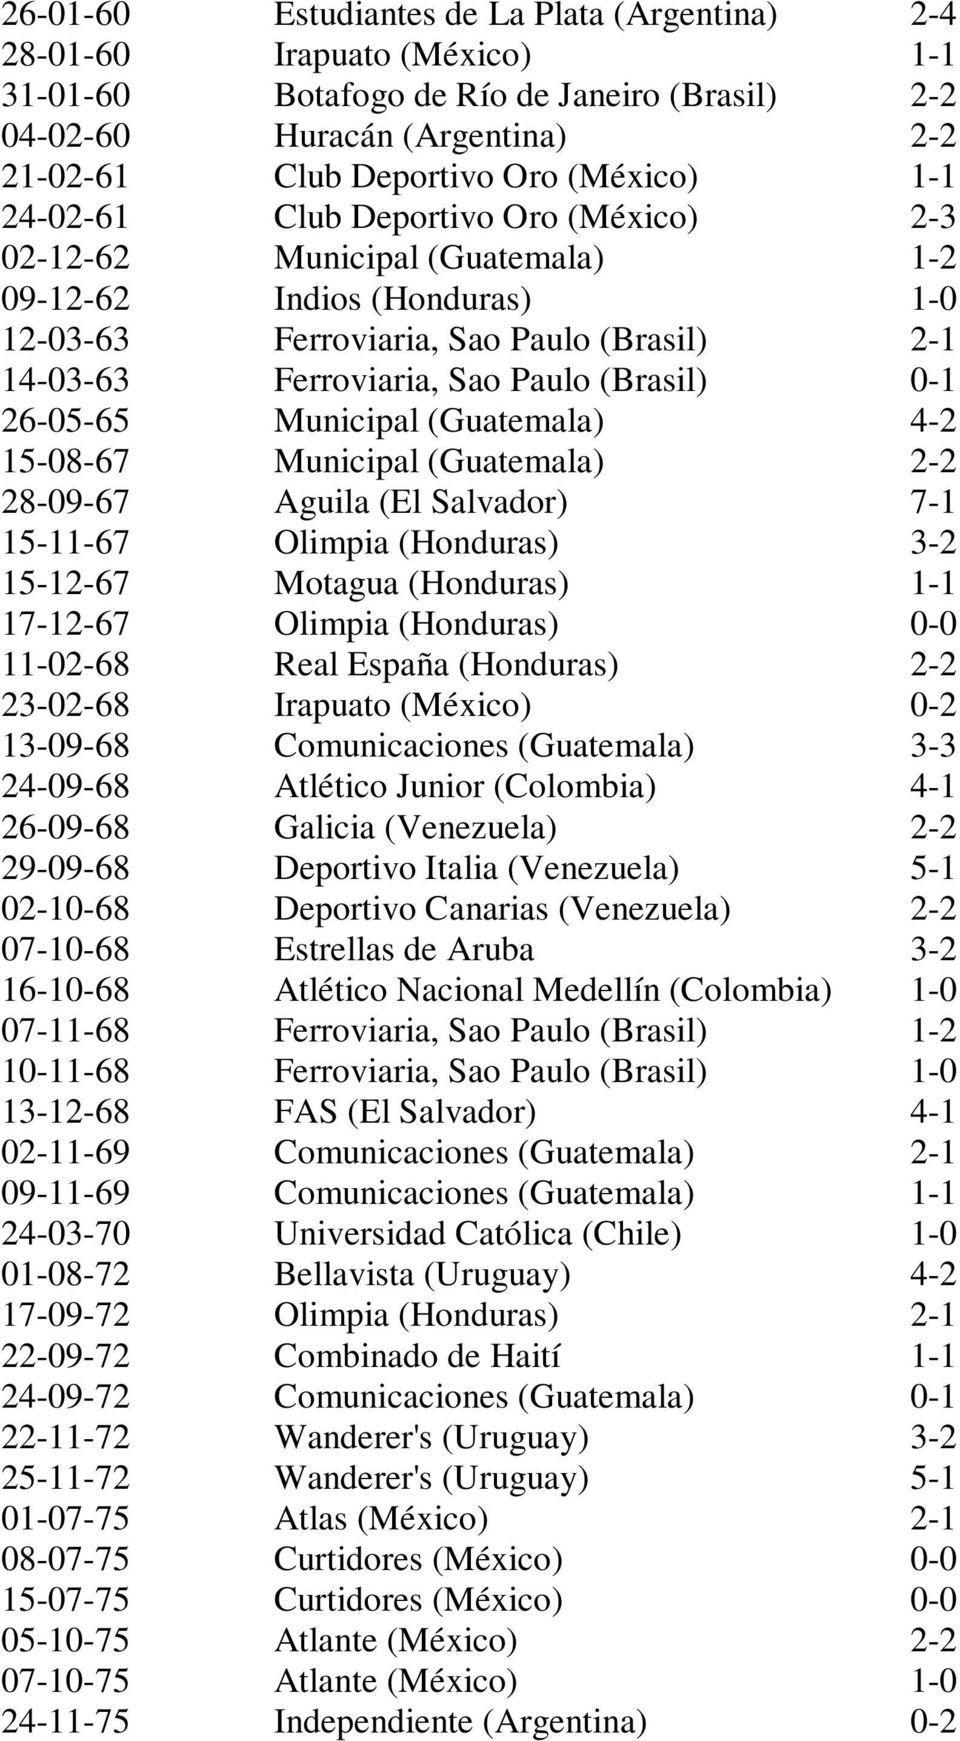 0-1 26-05-65 Municipal (Guatemala) 4-2 15-08-67 Municipal (Guatemala) 2-2 28-09-67 Aguila (El Salvador) 7-1 15-11-67 Olimpia (Honduras) 3-2 15-12-67 Motagua (Honduras) 1-1 17-12-67 Olimpia (Honduras)